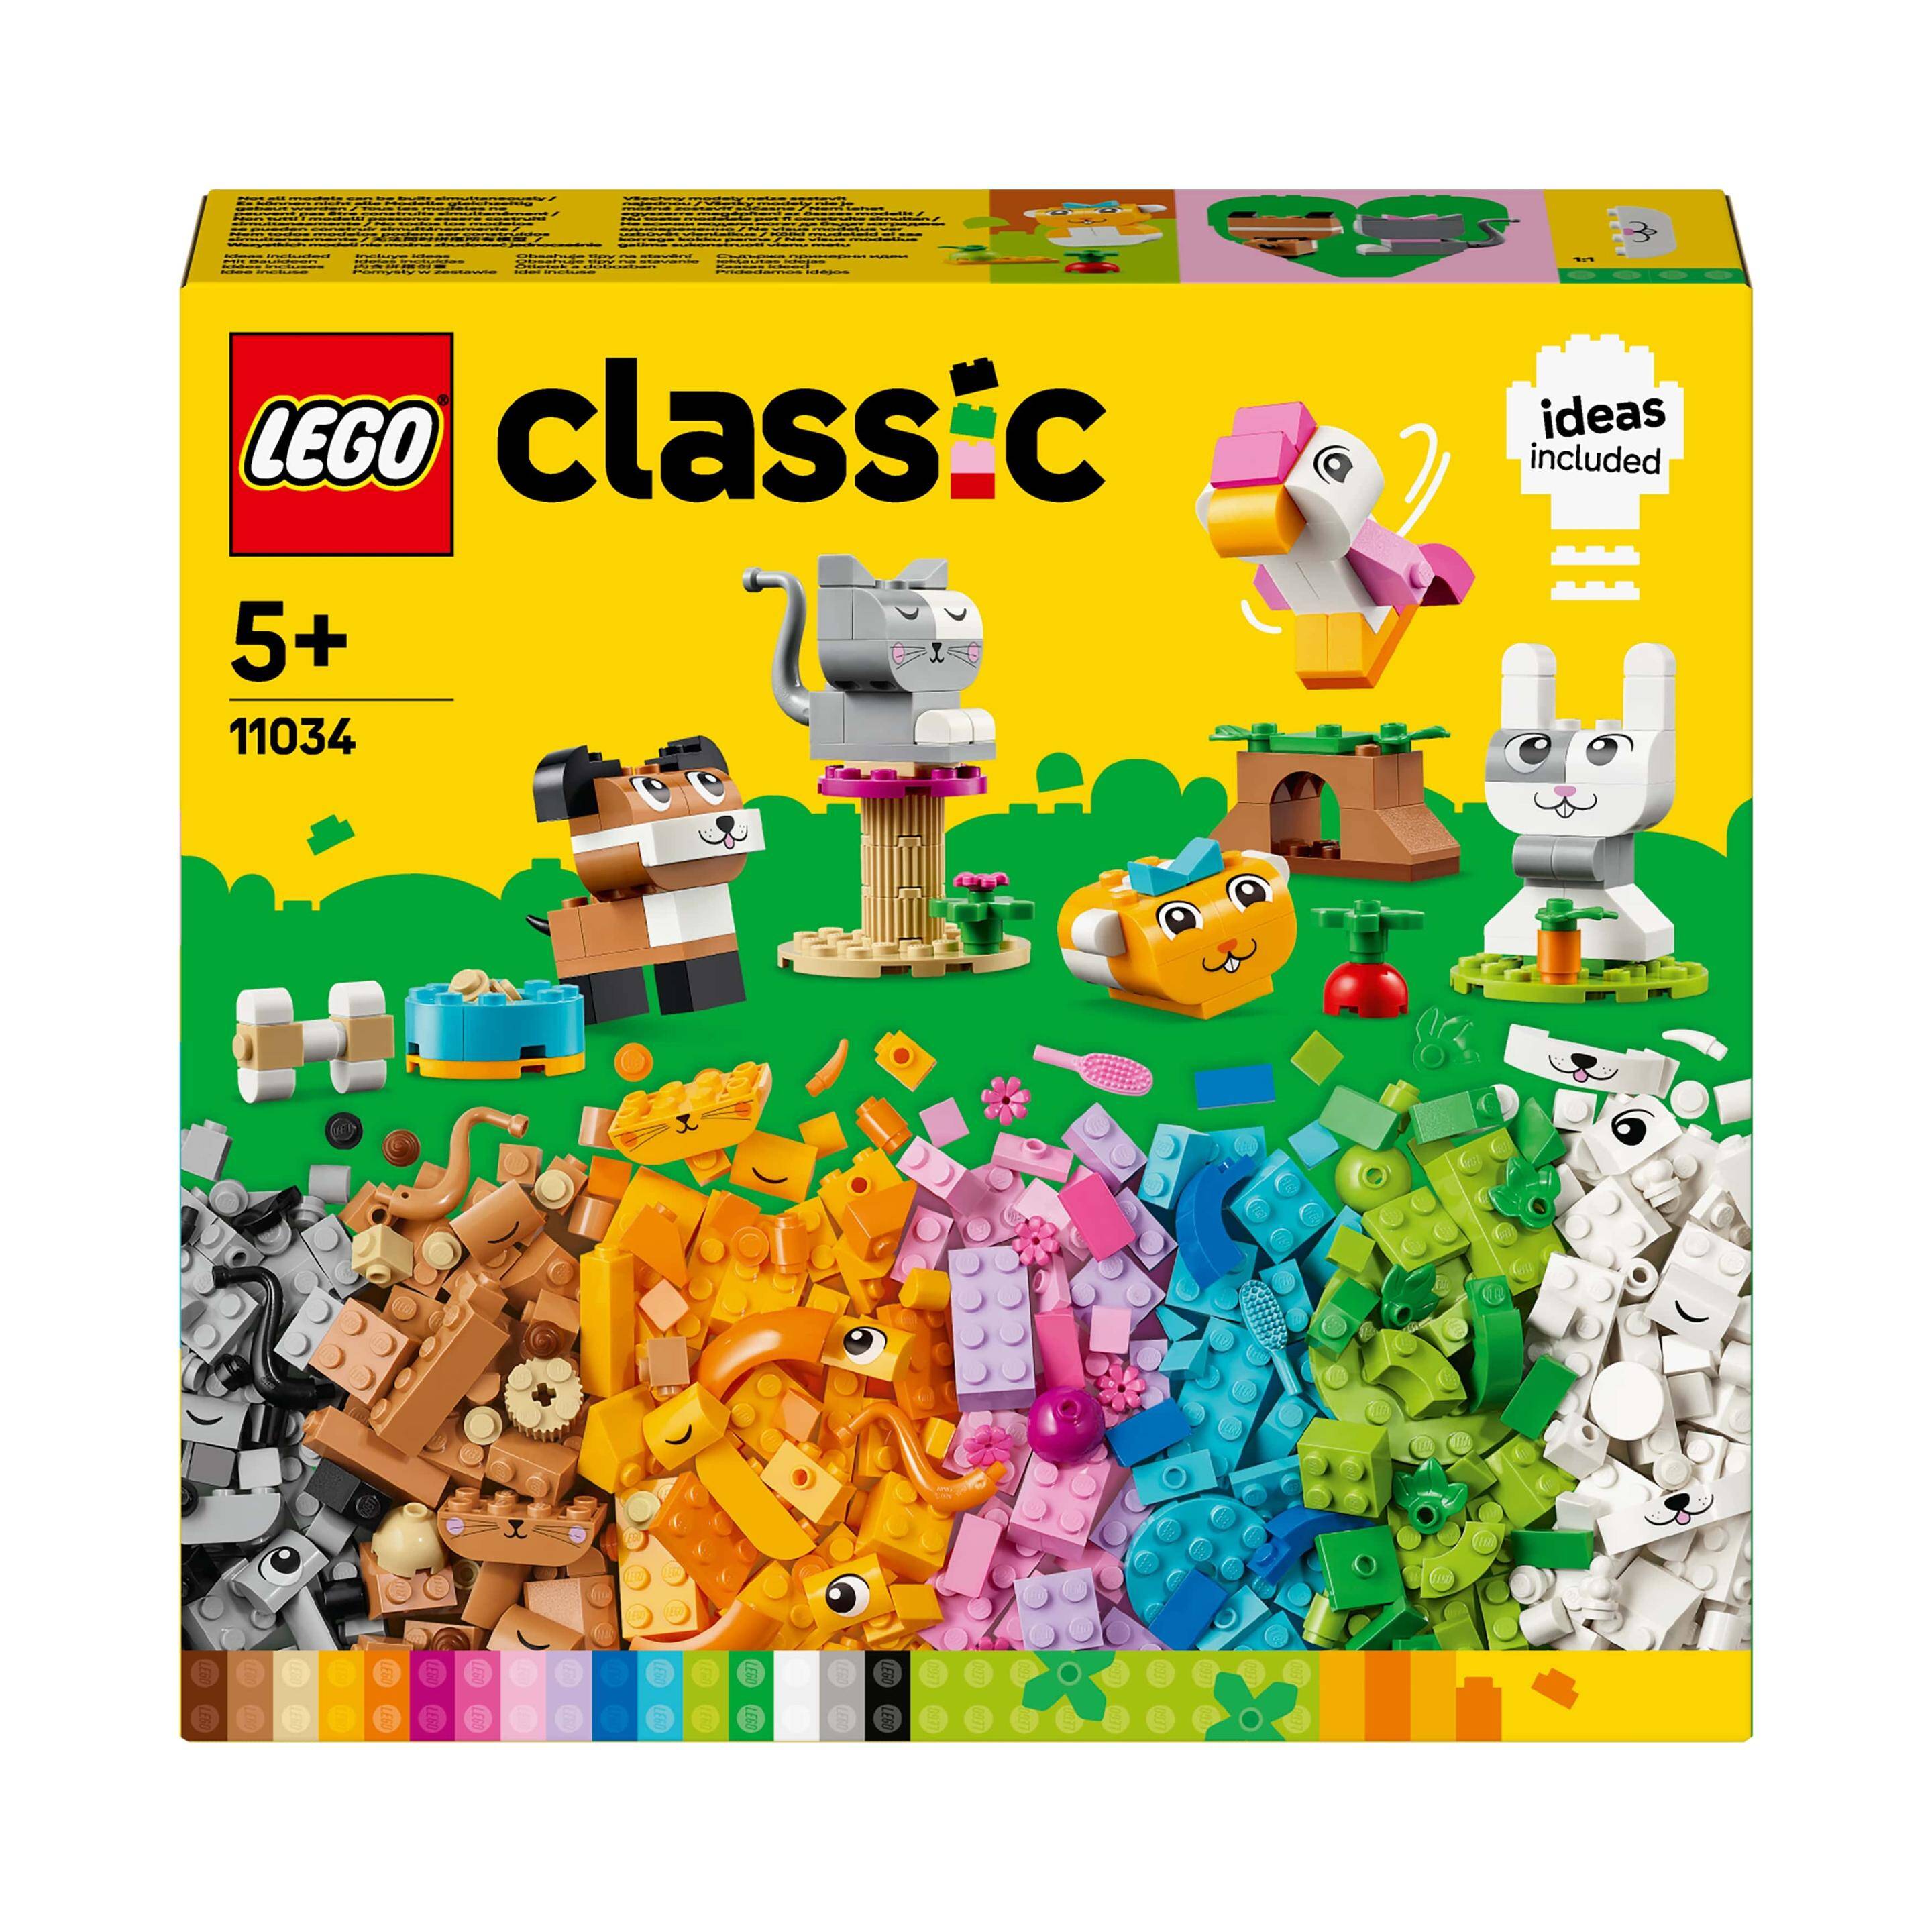 LEGO® CLASSIC LG-11034.Kreatywne zwierzątka p4. 450 elementów.